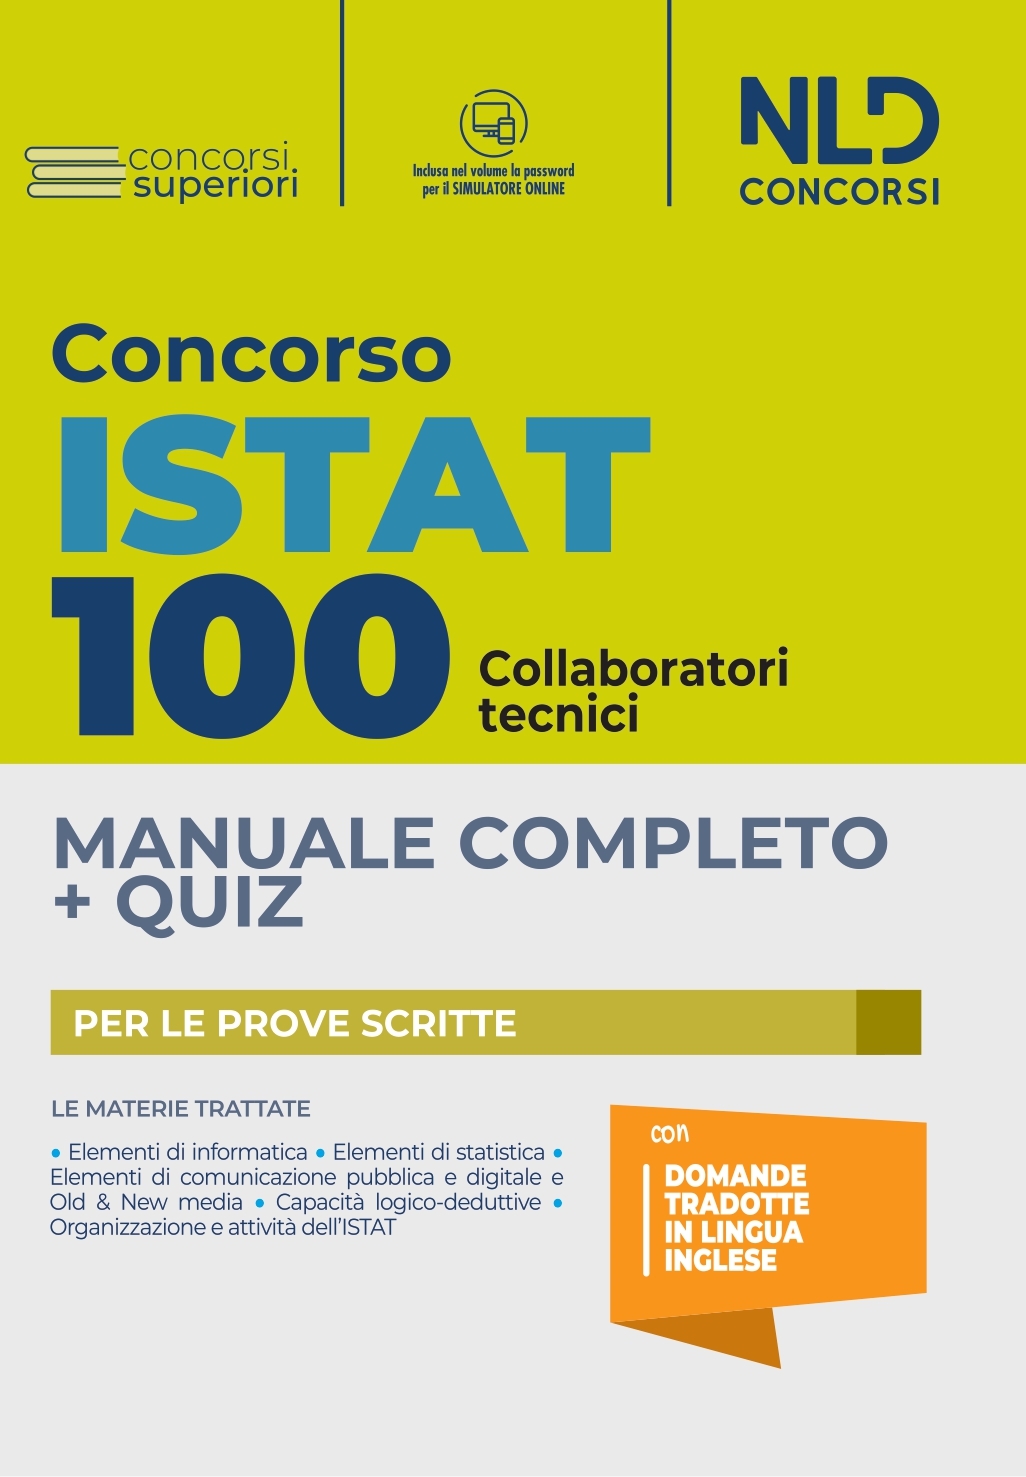 Concorso 100 posti ISTAT: Manuale Completo + Quiz  per 100 Posti di Collaboratori Tecnici